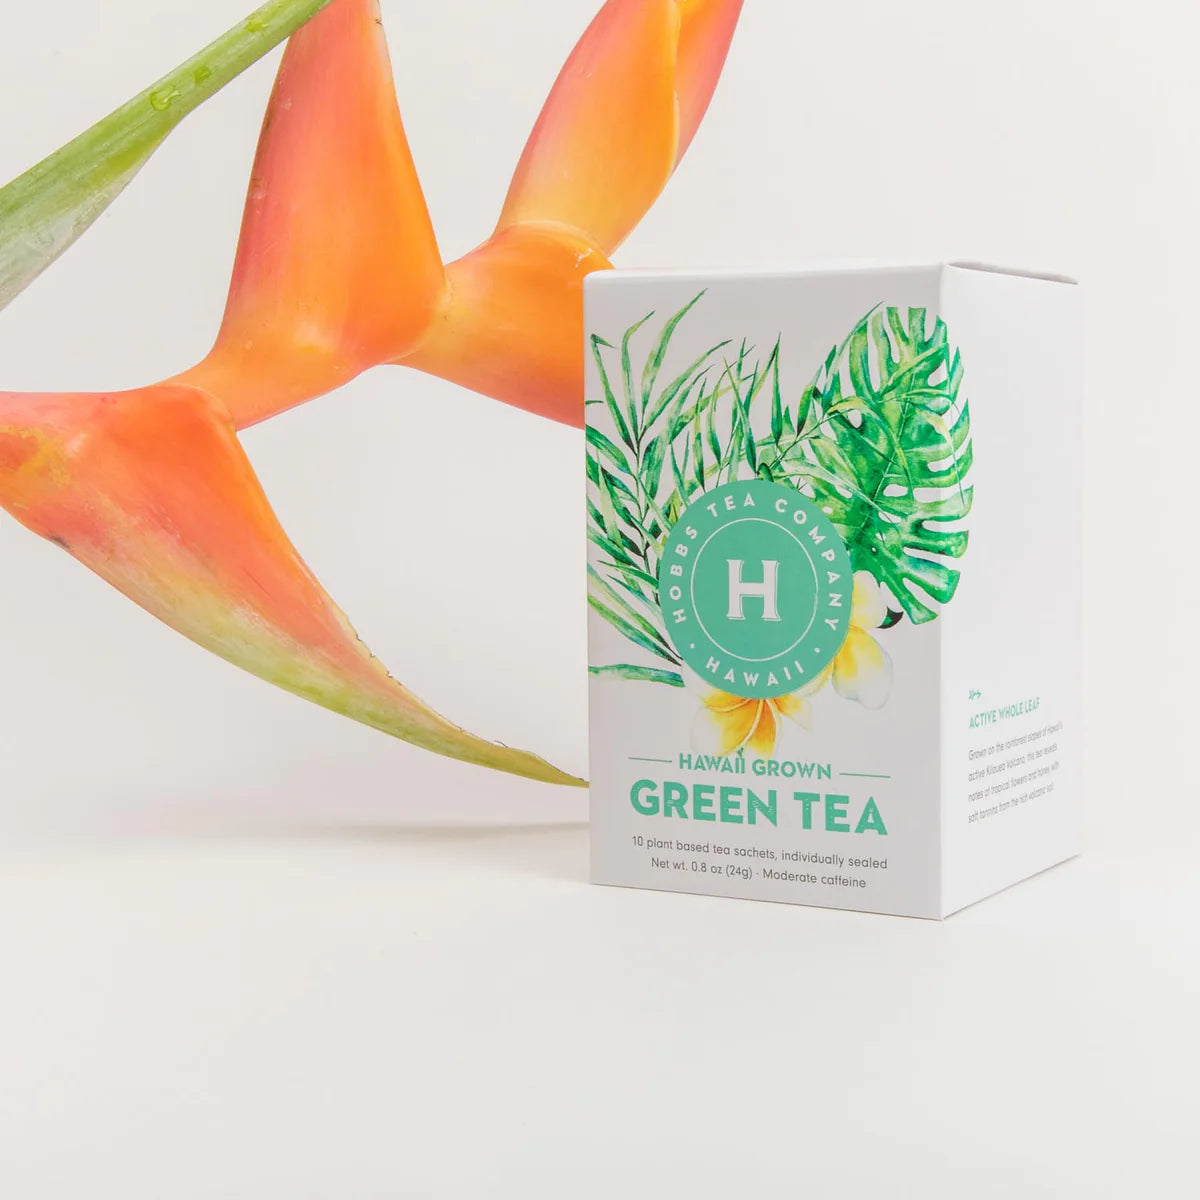 Hobbs Tea - Hawaii Grown Green Tea